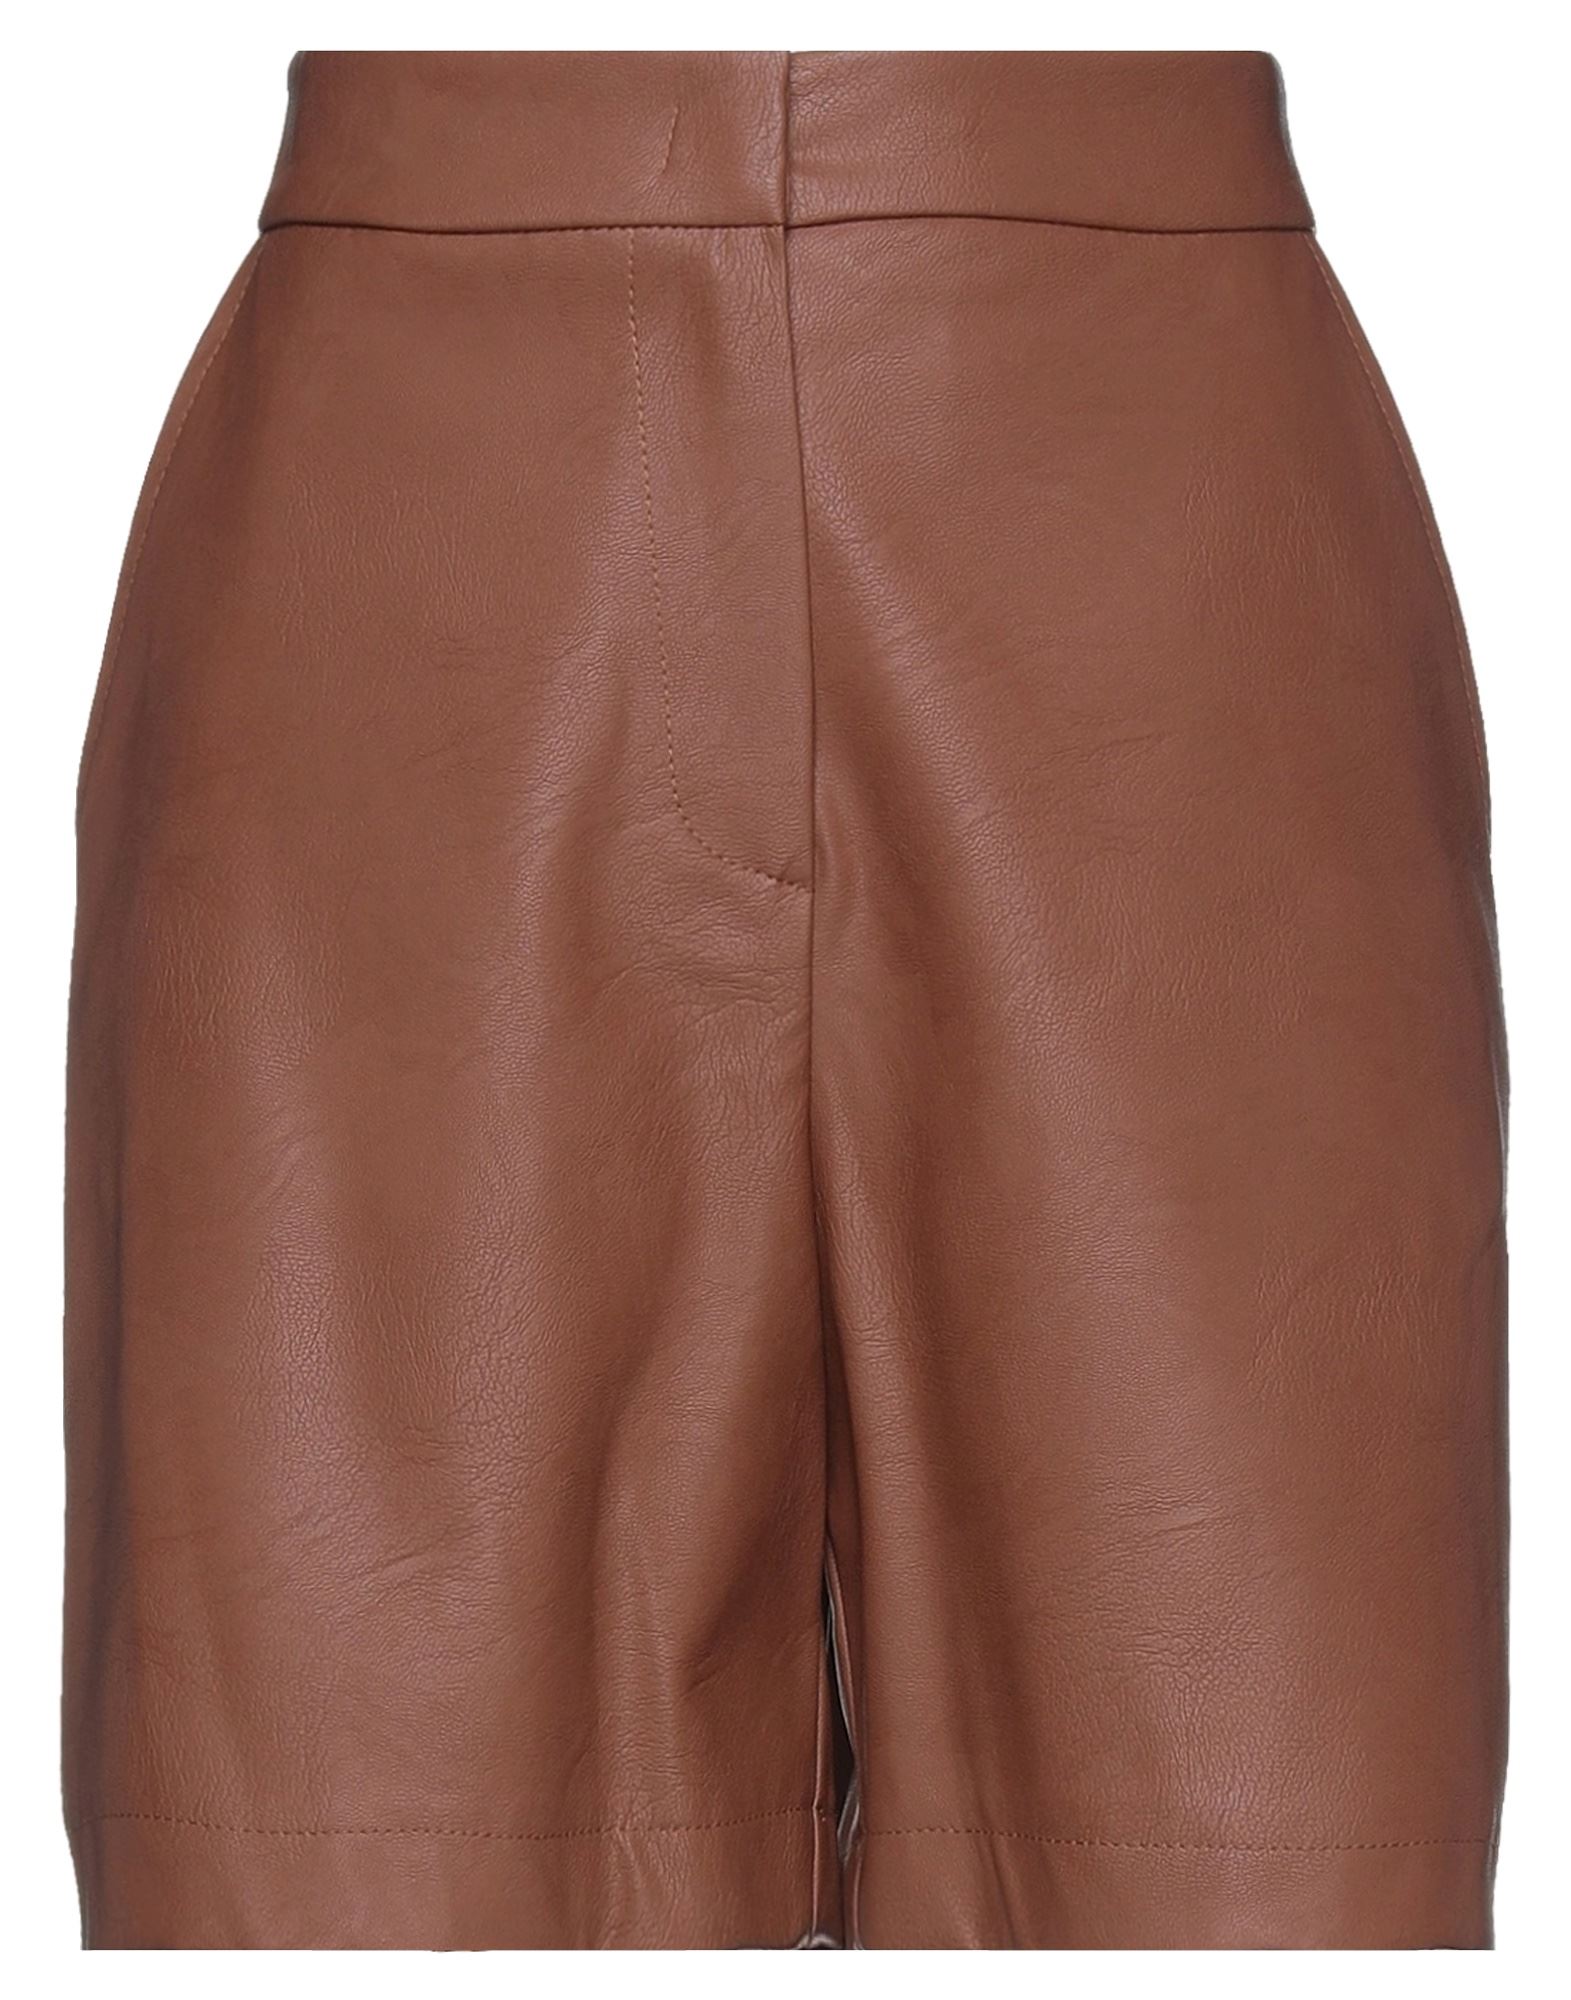 Icona By Kaos Woman Shorts & Bermuda Shorts Brown Size 10 Polyurethane, Viscose